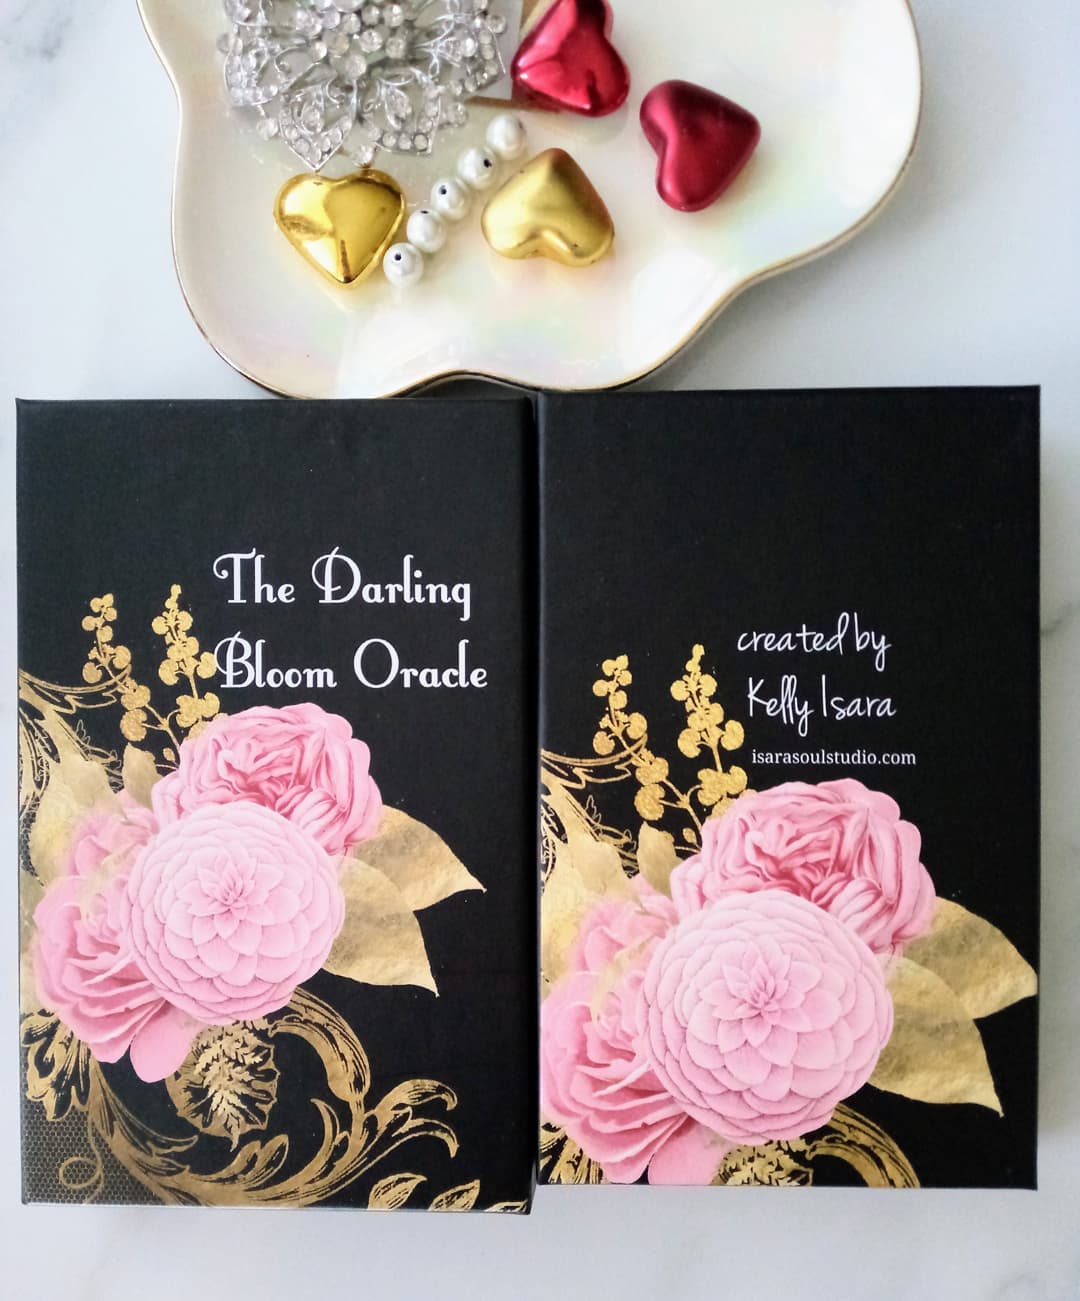 The Darling Bloom Oracle